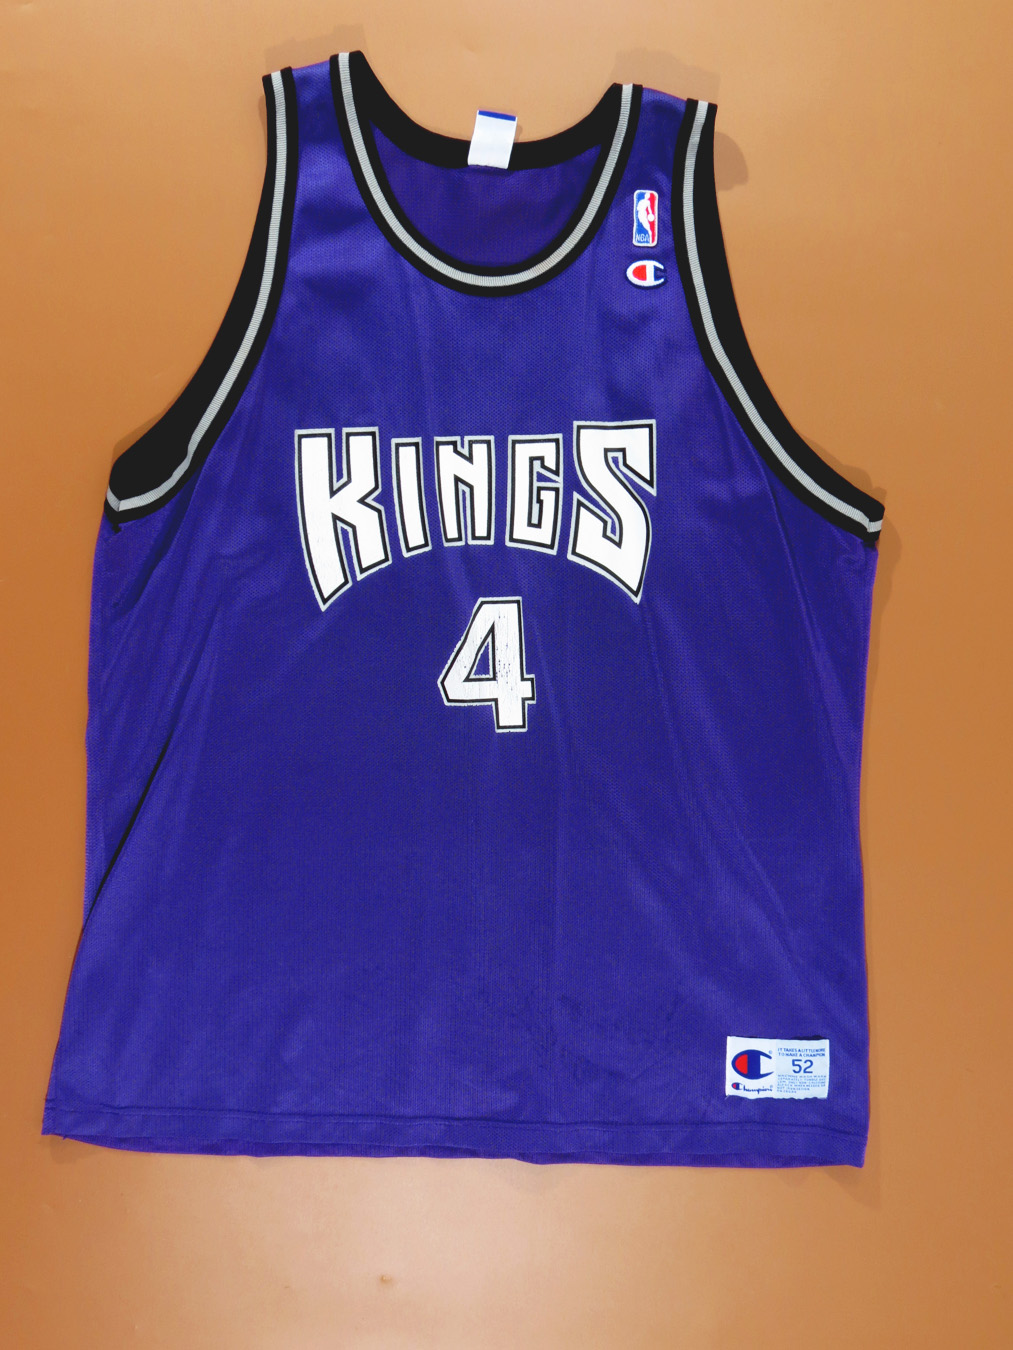 Chris Webber Purple Sacramento Kings Authentic Jersey (XXL/Vintage)